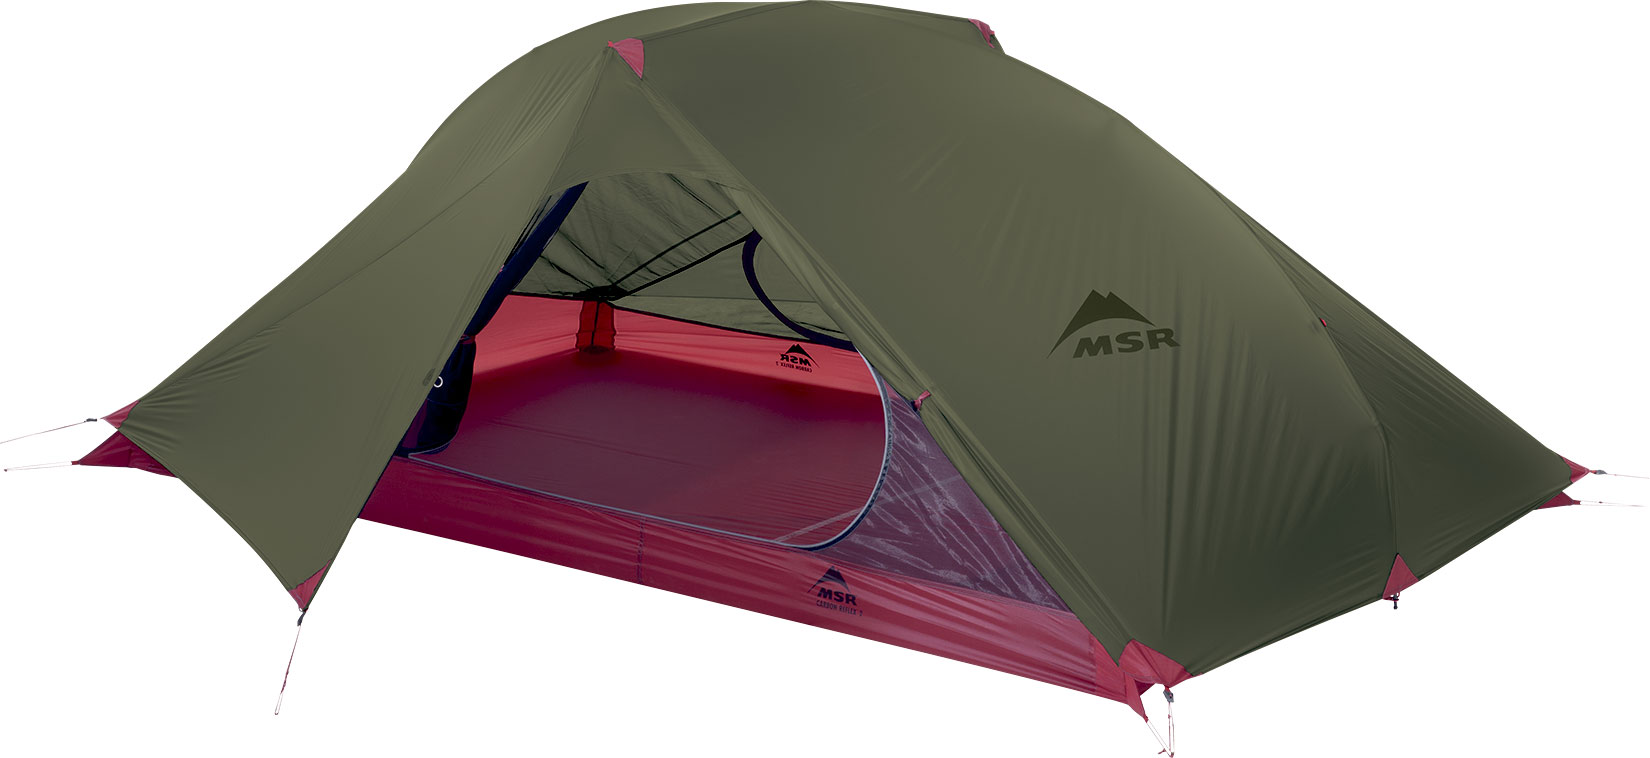 Nyhed! MSR Carbon Reflex – ekstremt lette telte til sommerens eventyr